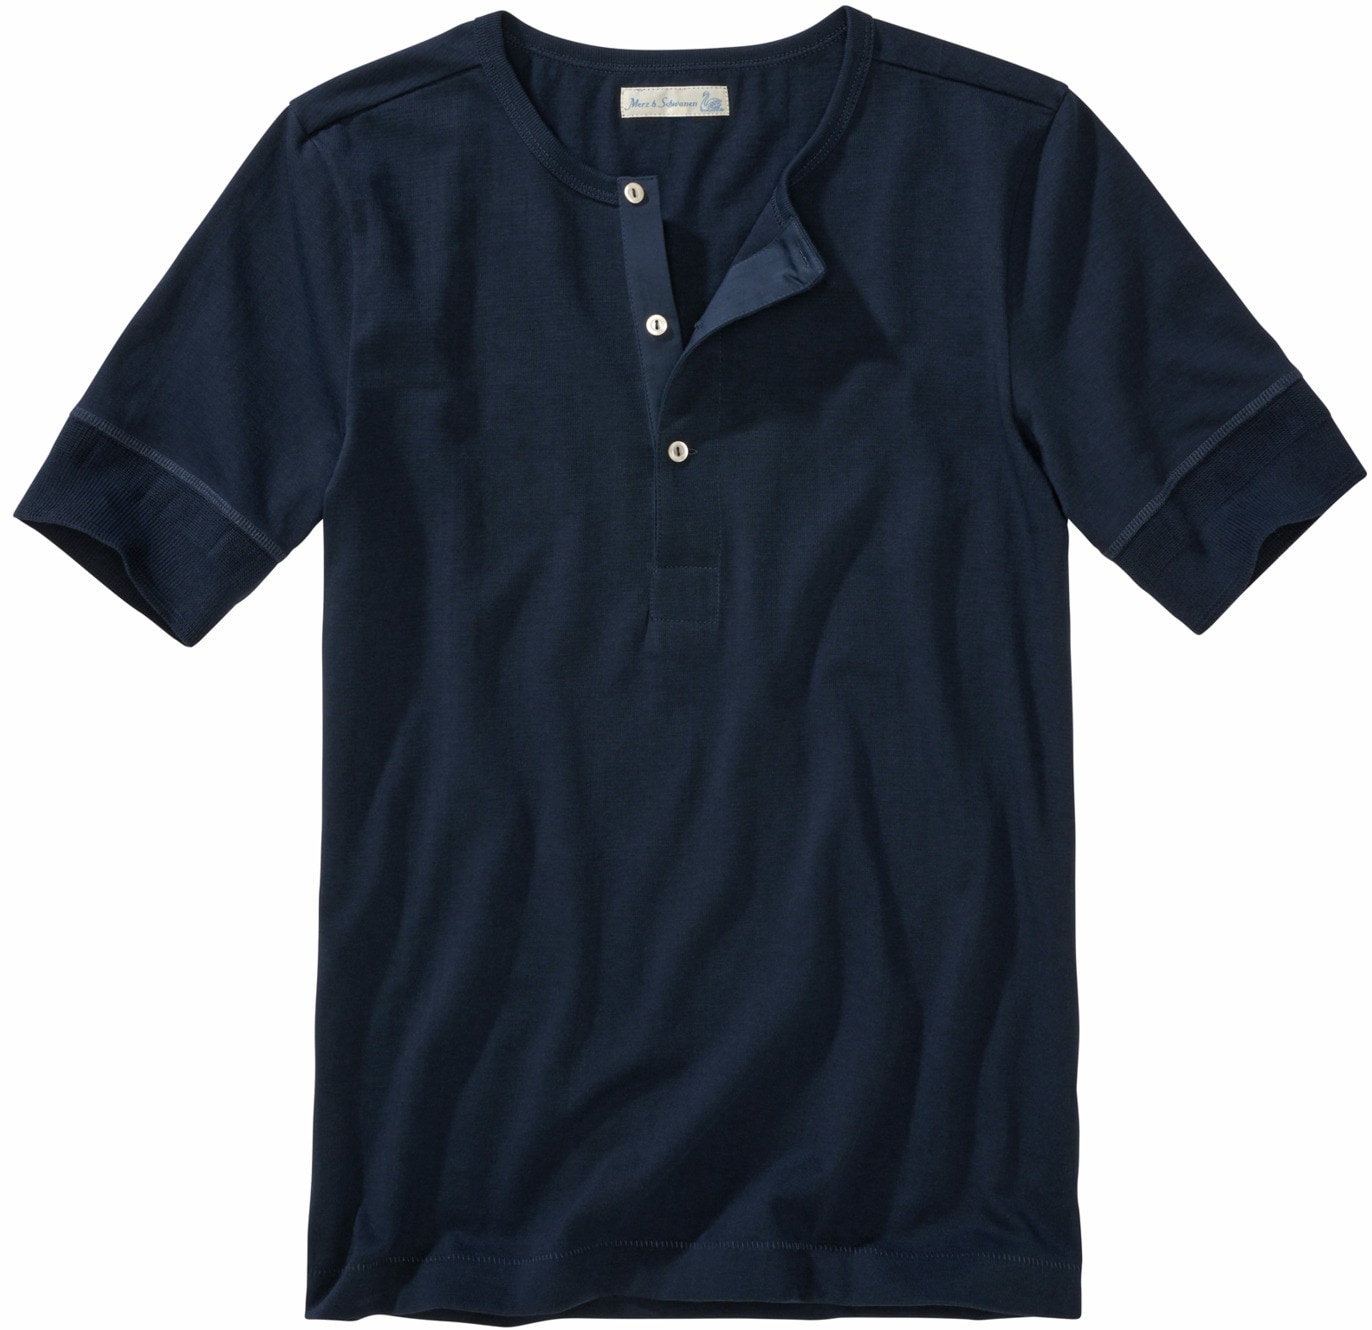 Mey & Edlich Herren Good-Originals-Henley-T-Shirt blau 7(XL) - 7(XL)